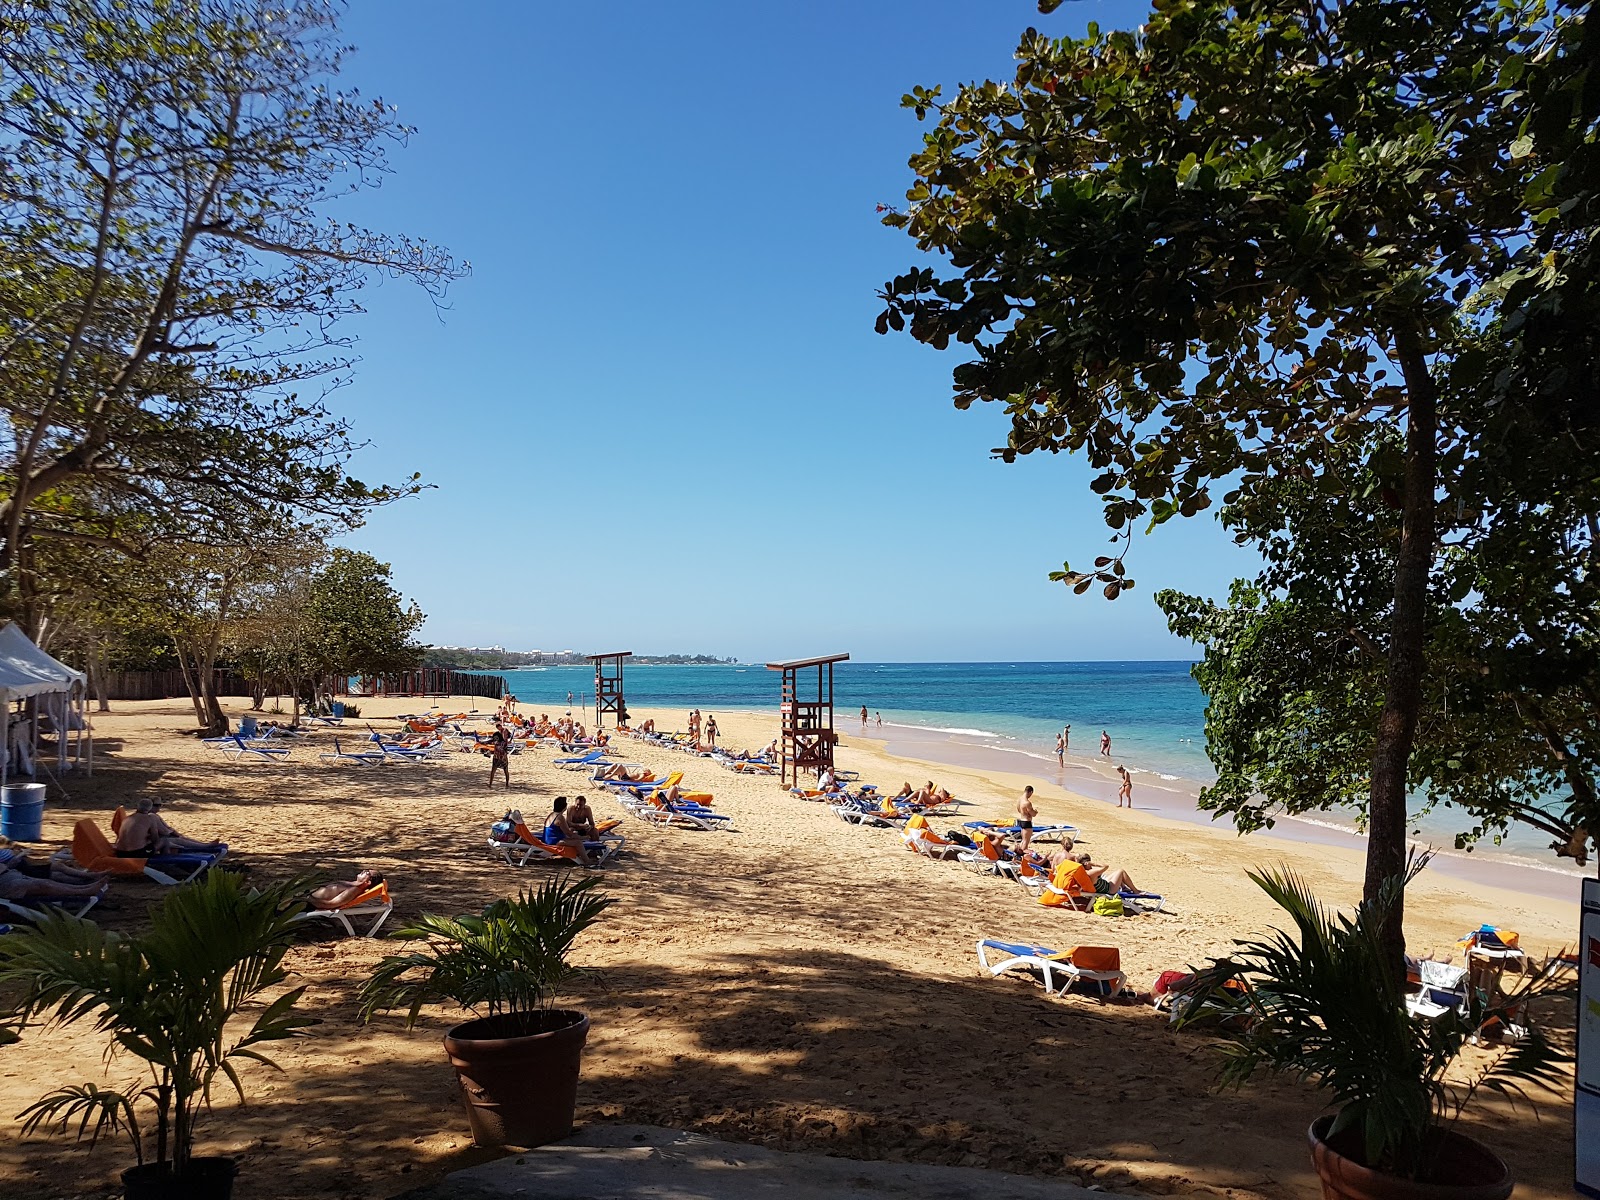 Foto af Pearly beach - populært sted blandt afslapningskendere